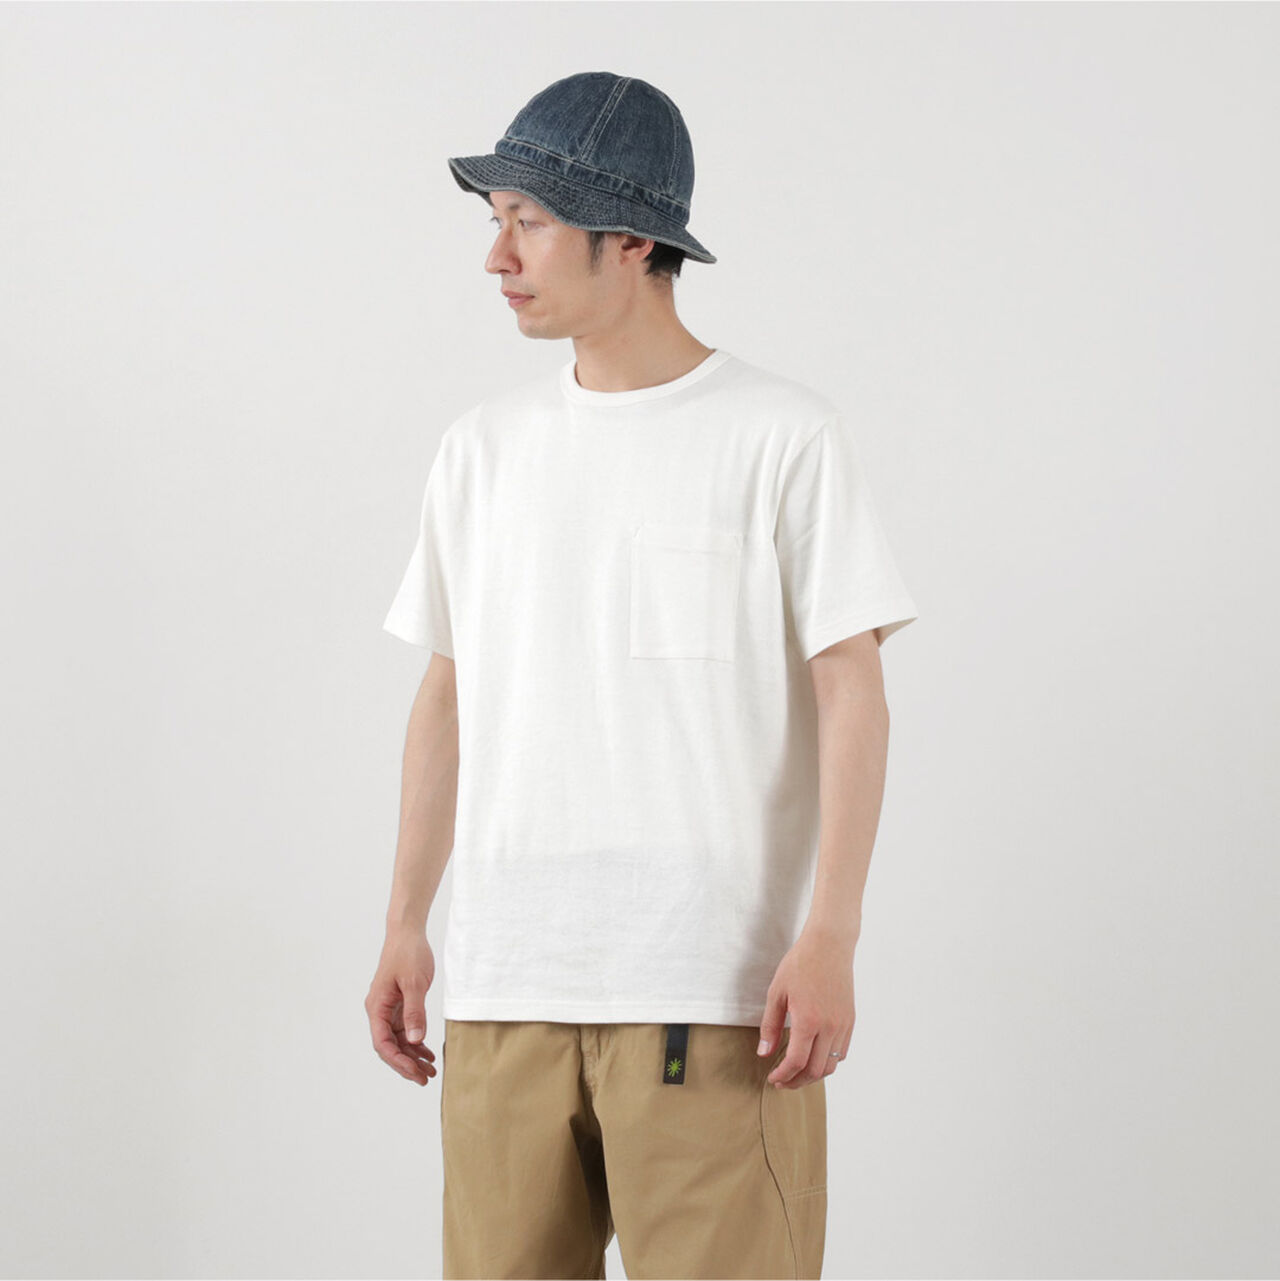 10oz Basic Fit Pocket T-Shirt,, large image number 9